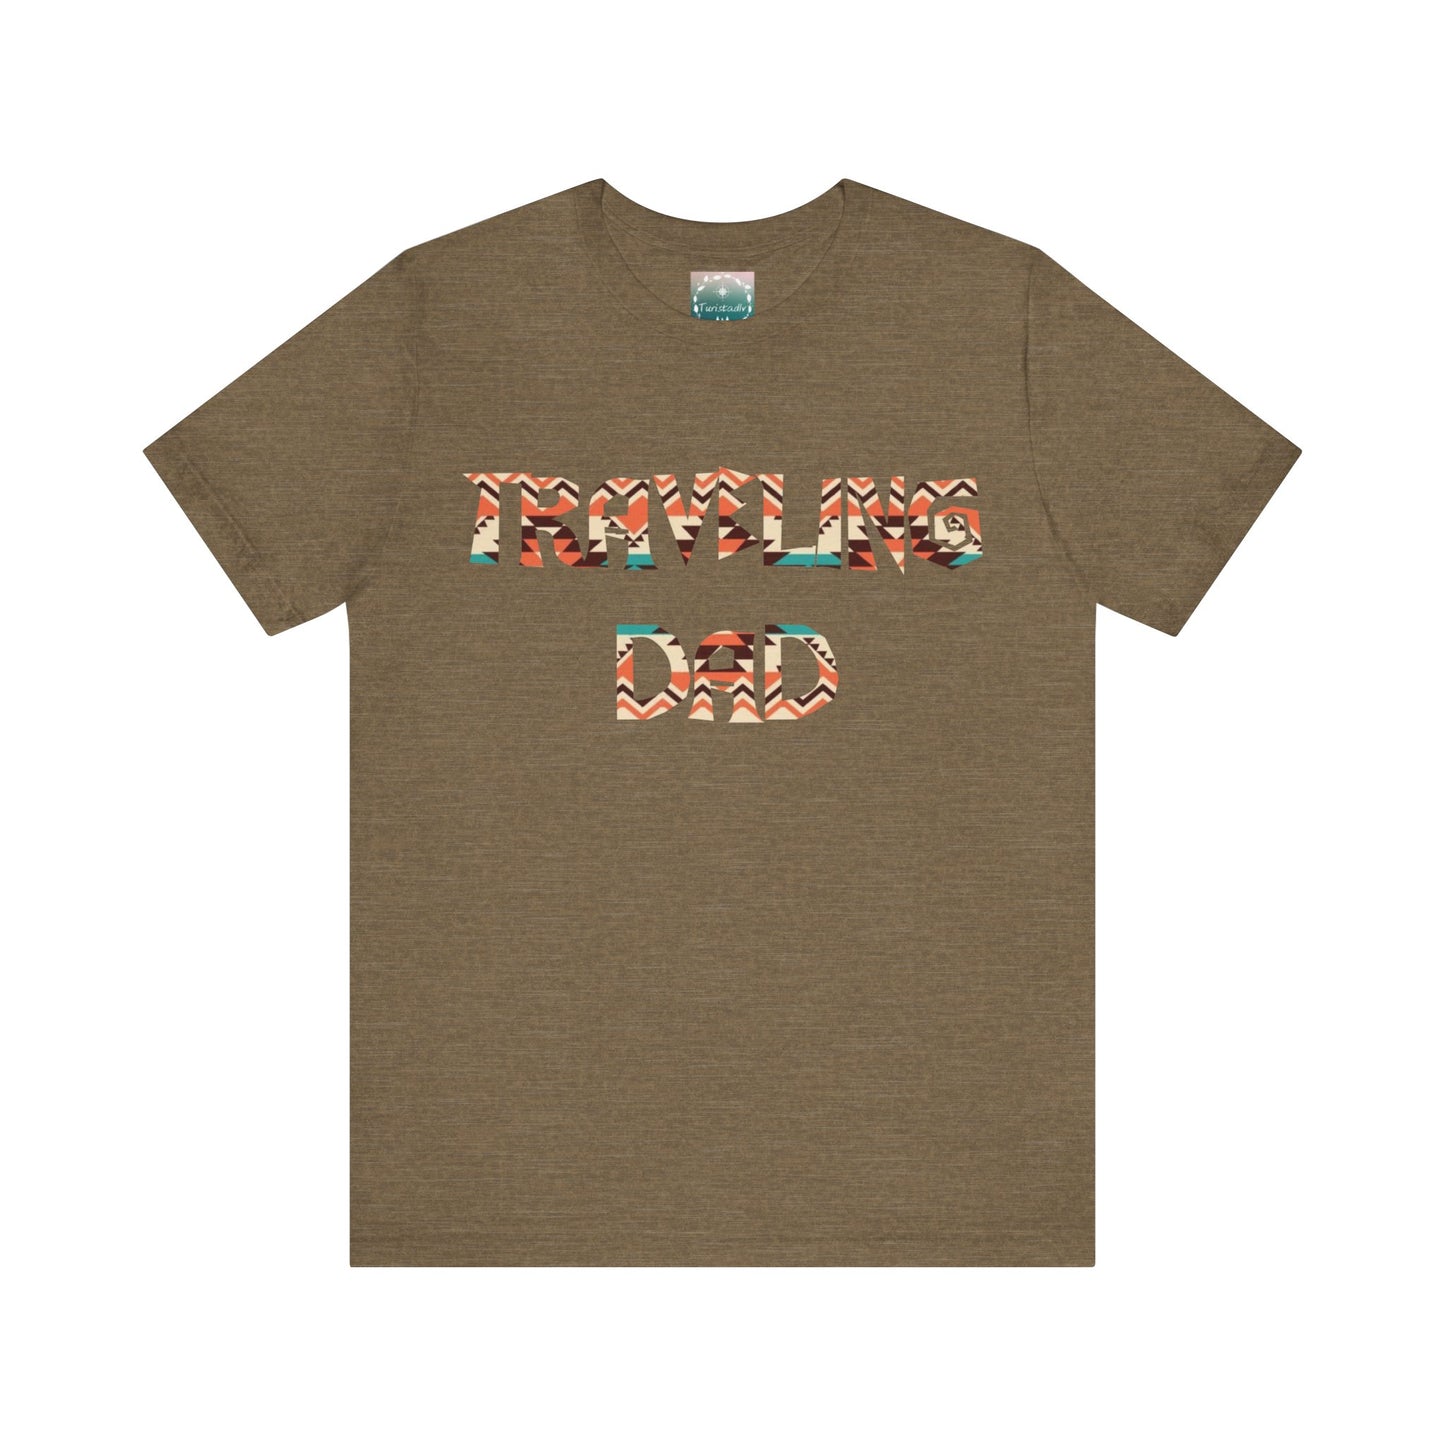 Camiseta de papá, padre viajero, camiseta para papá, papá viajero, regalo para papá, camiseta hombre, padre aventurero, dia del padre, papá.